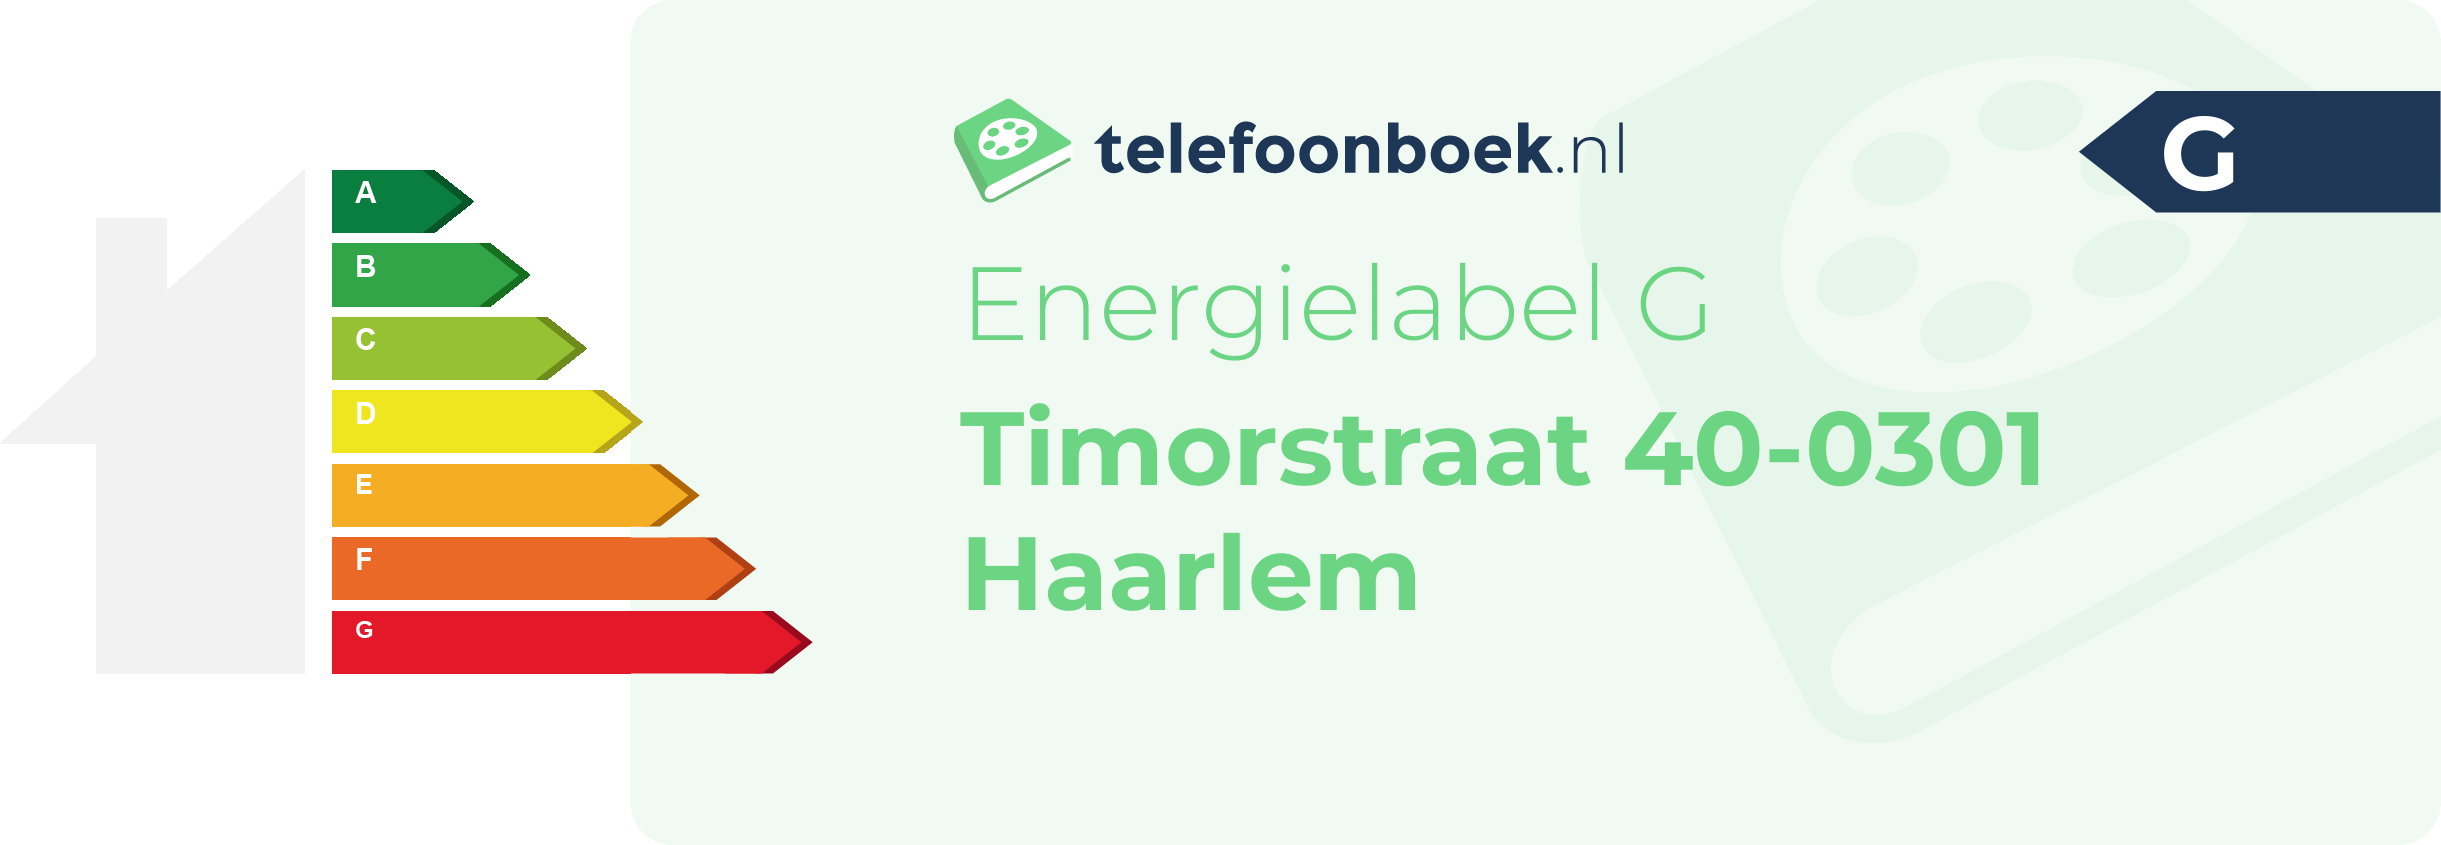 Energielabel Timorstraat 40-0301 Haarlem